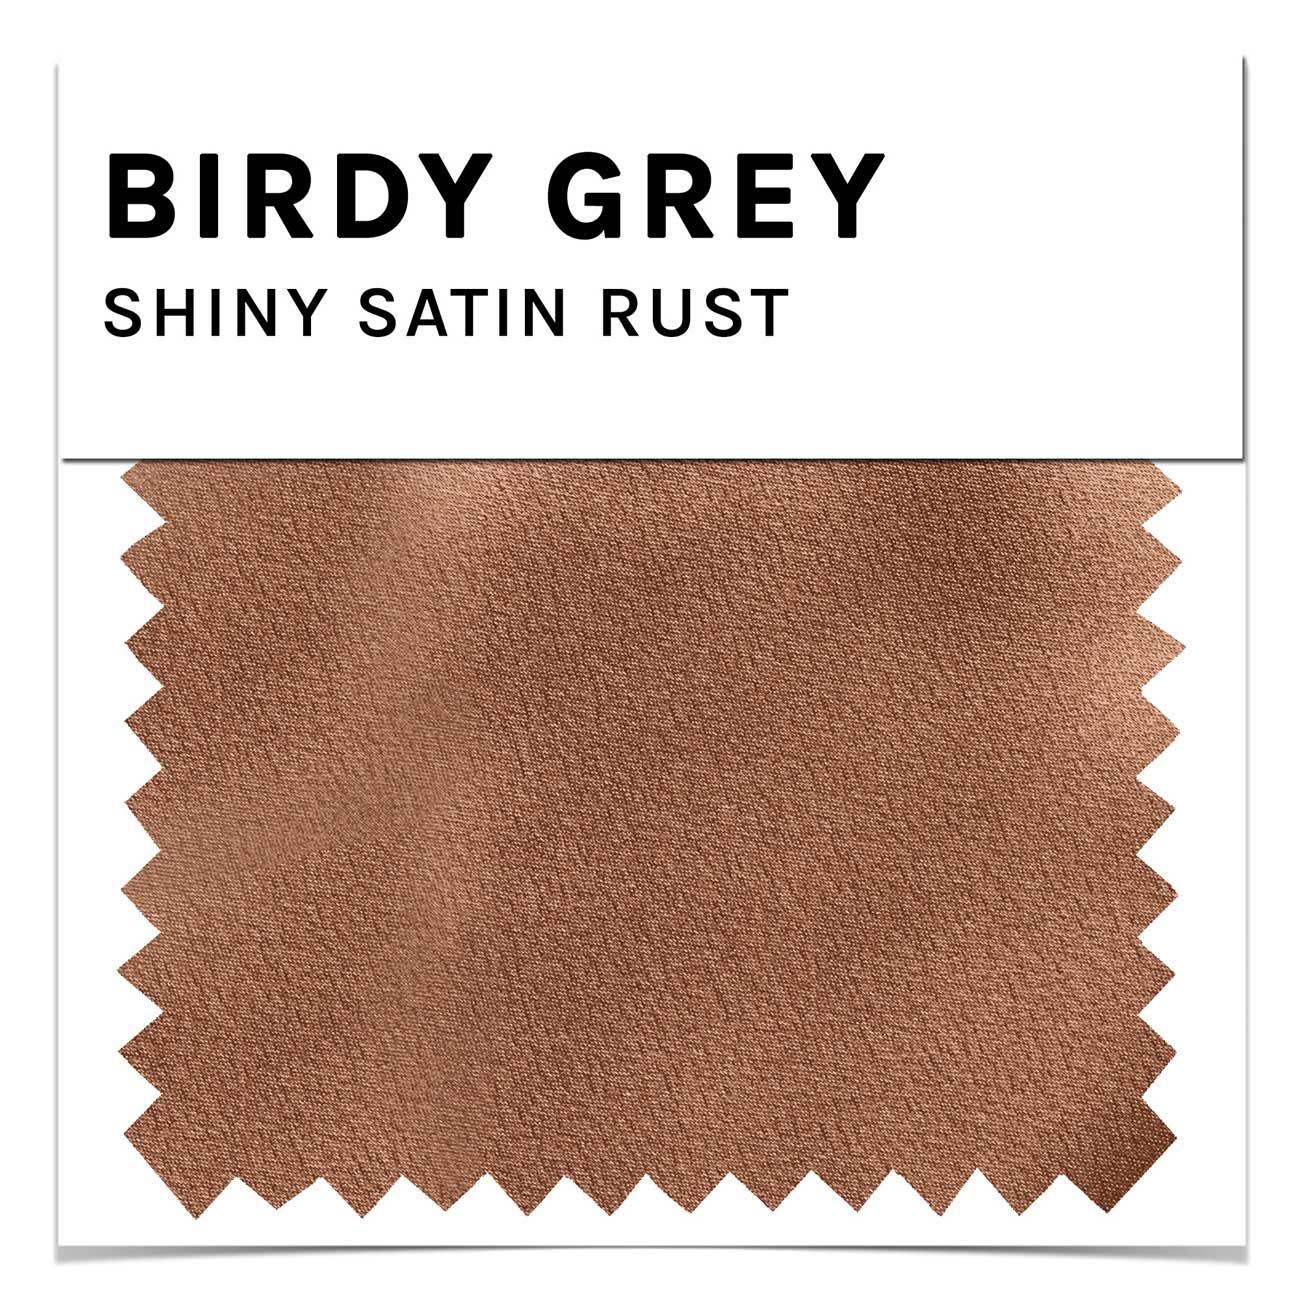 Swatch - Shiny Satin in Rust by Birdy Grey